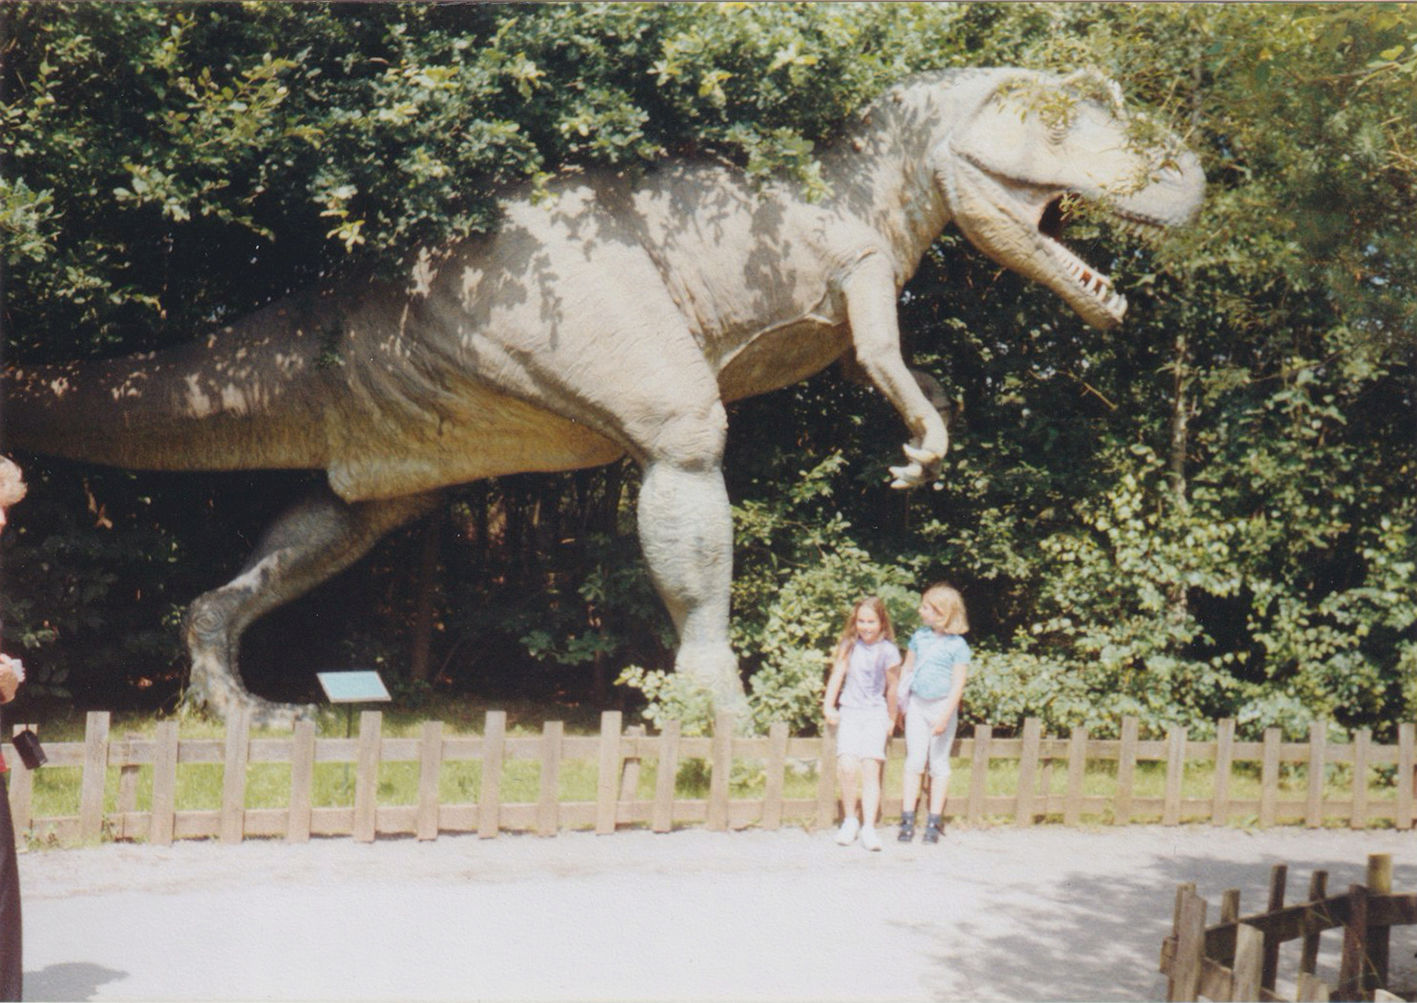 Fotografie zu Deutung 5c - Tyrannosaurus Rex guckt nach vorne, Mädchen nach hinten, Dinosaurier-Park Münchehagen